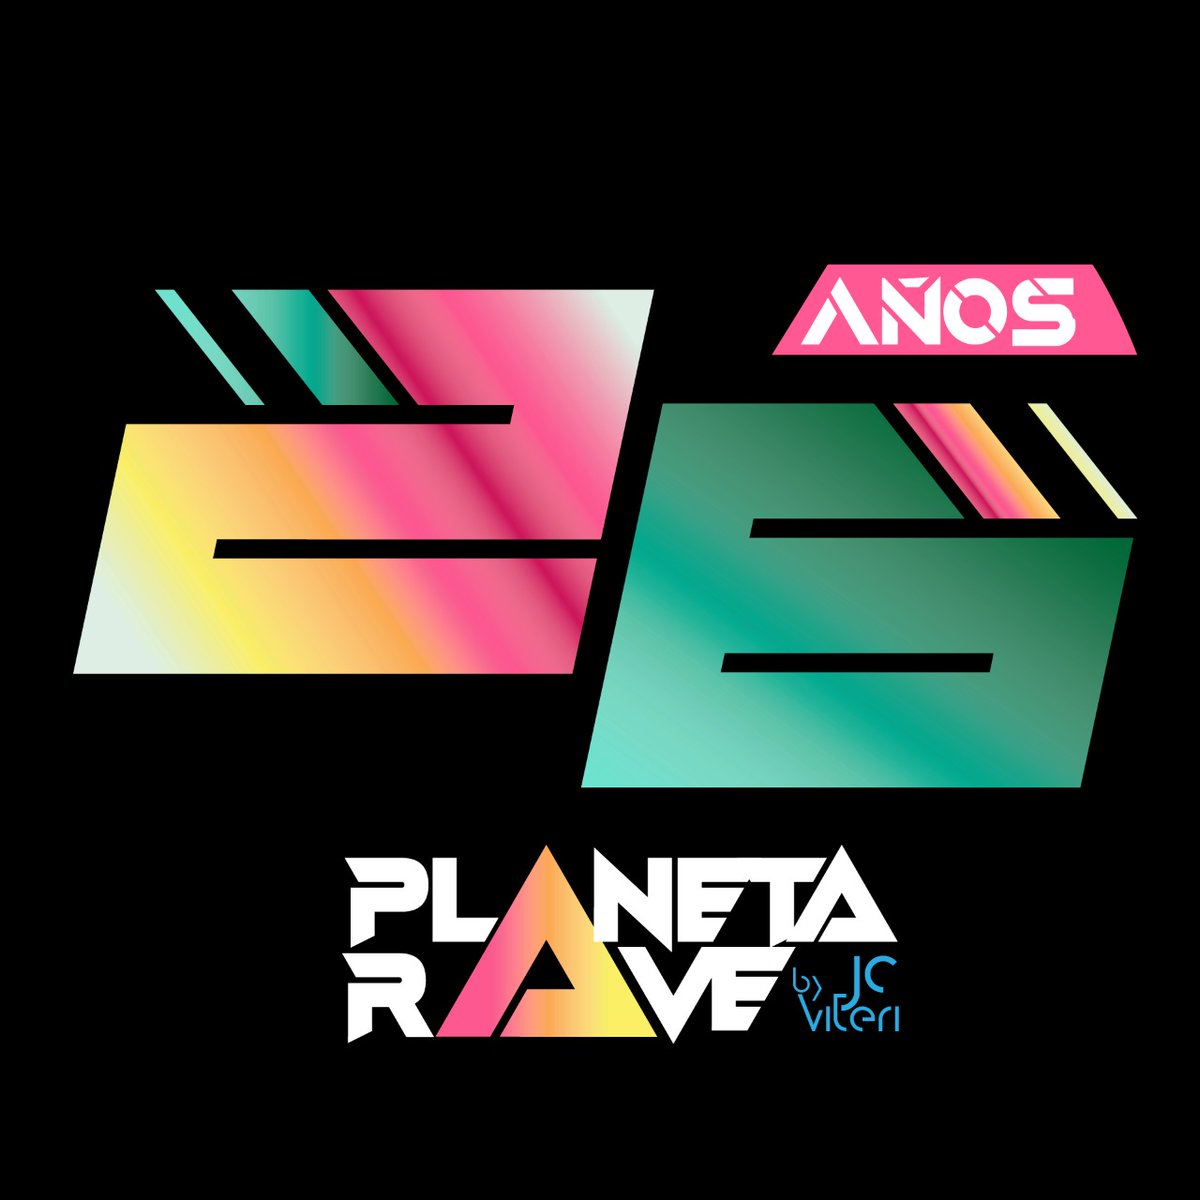 hoy 4 de agosto de 1996 nace el 1er programa de música electrónica del país 5to en Latinoamérica ahora 26 años de planeta rave Juan Carlos viteri creador productor precursor de la música electrónica en el país gracias por todos estos años y seguiremos creciendo #26AñosPlanetaRave